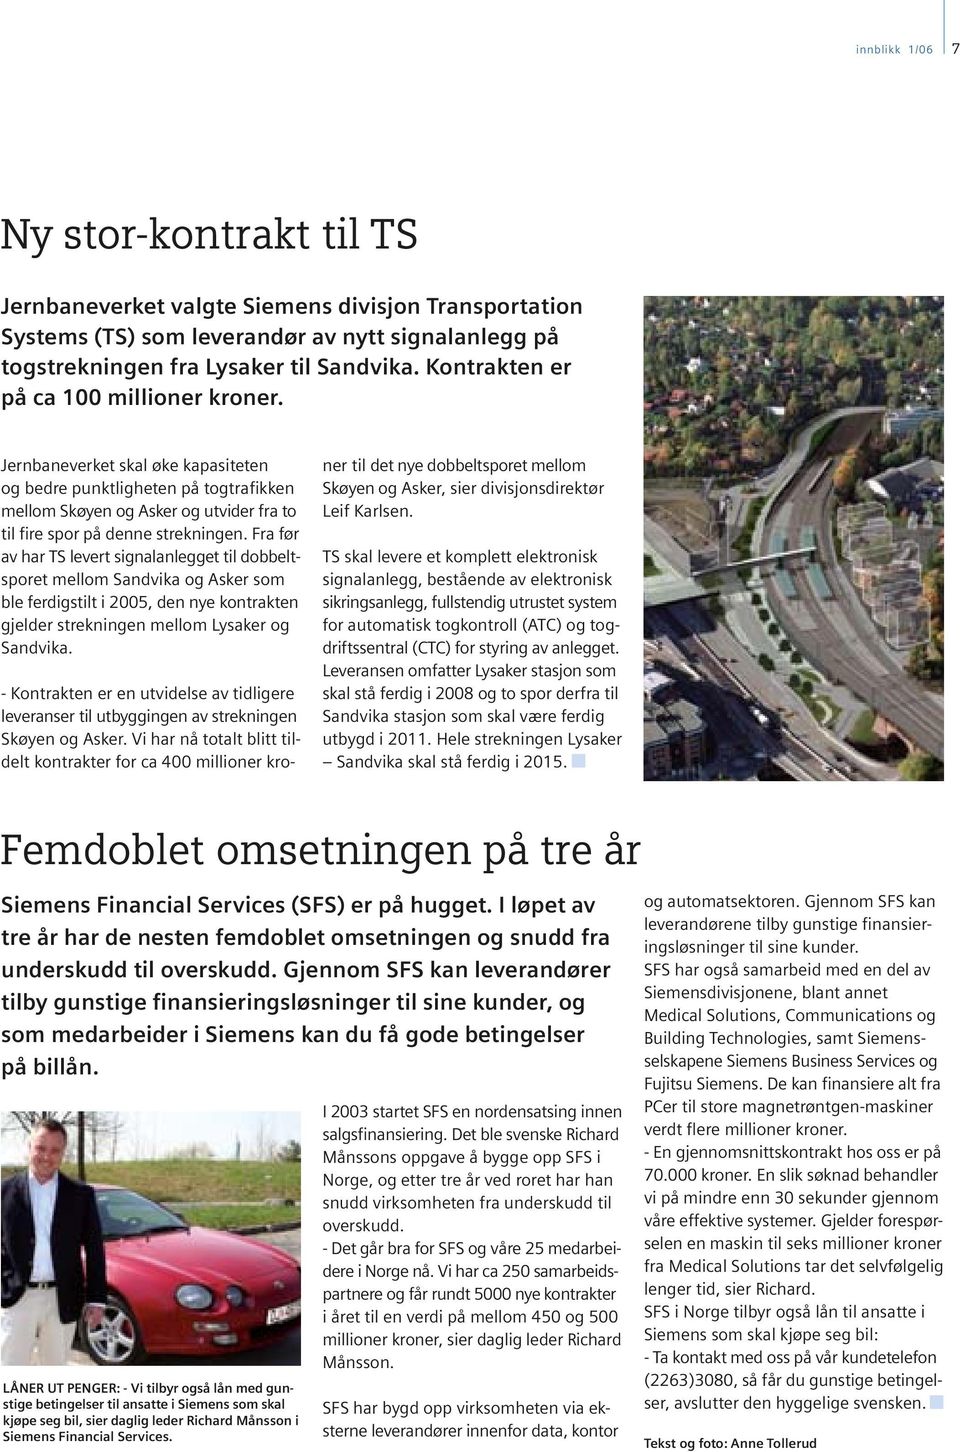 Fra før av har TS levert signalanlegget til dobbeltsporet mellom Sandvika og Asker som ble ferdigstilt i 2005, den nye kontrakten gjelder strekningen mellom Lysaker og Sandvika.